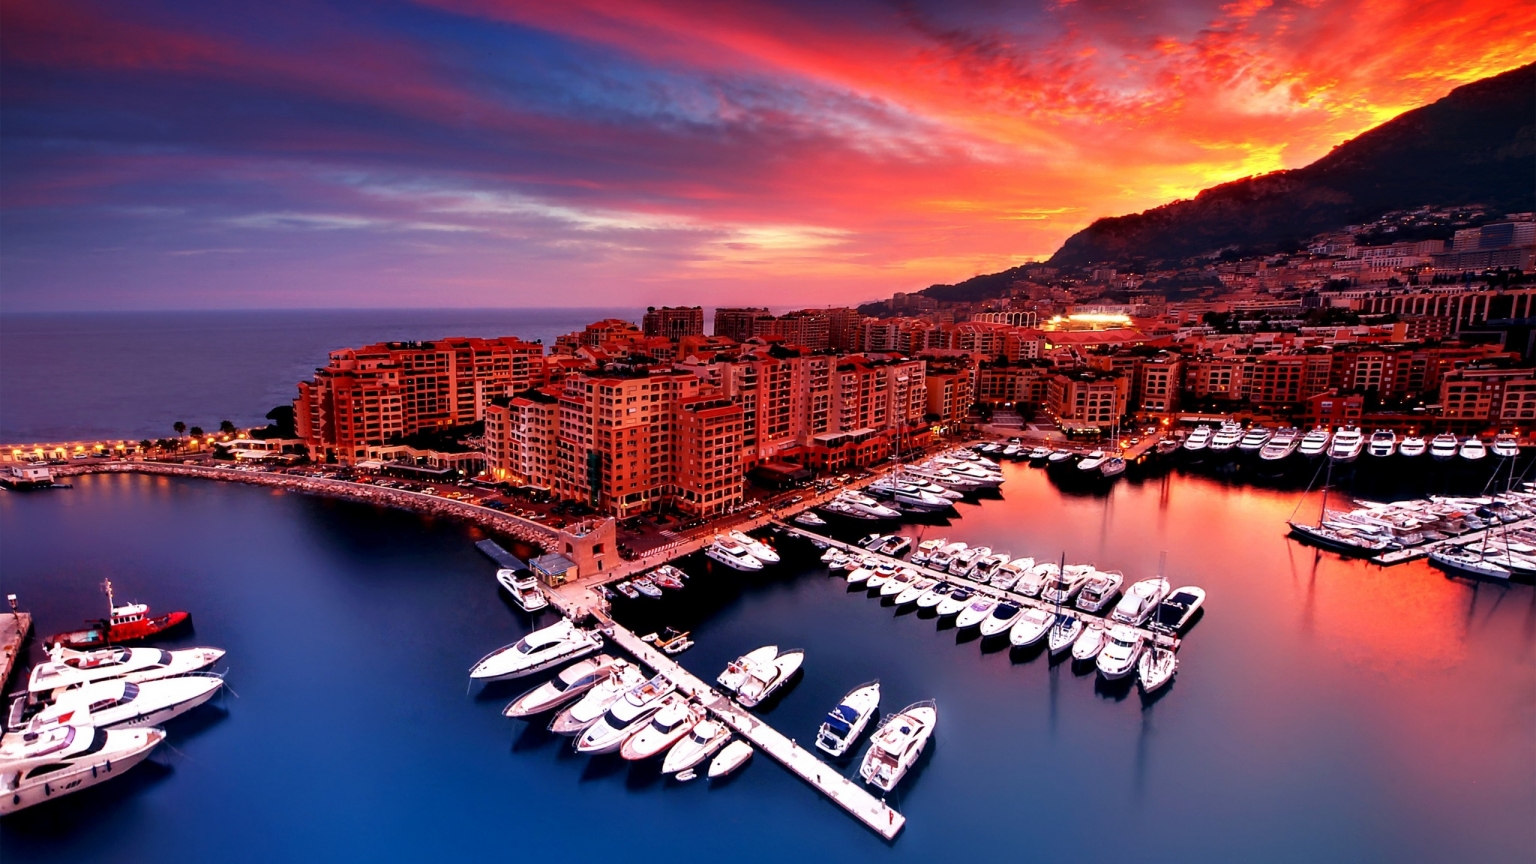 Sunrise in Monaco for 1536 x 864 HDTV resolution